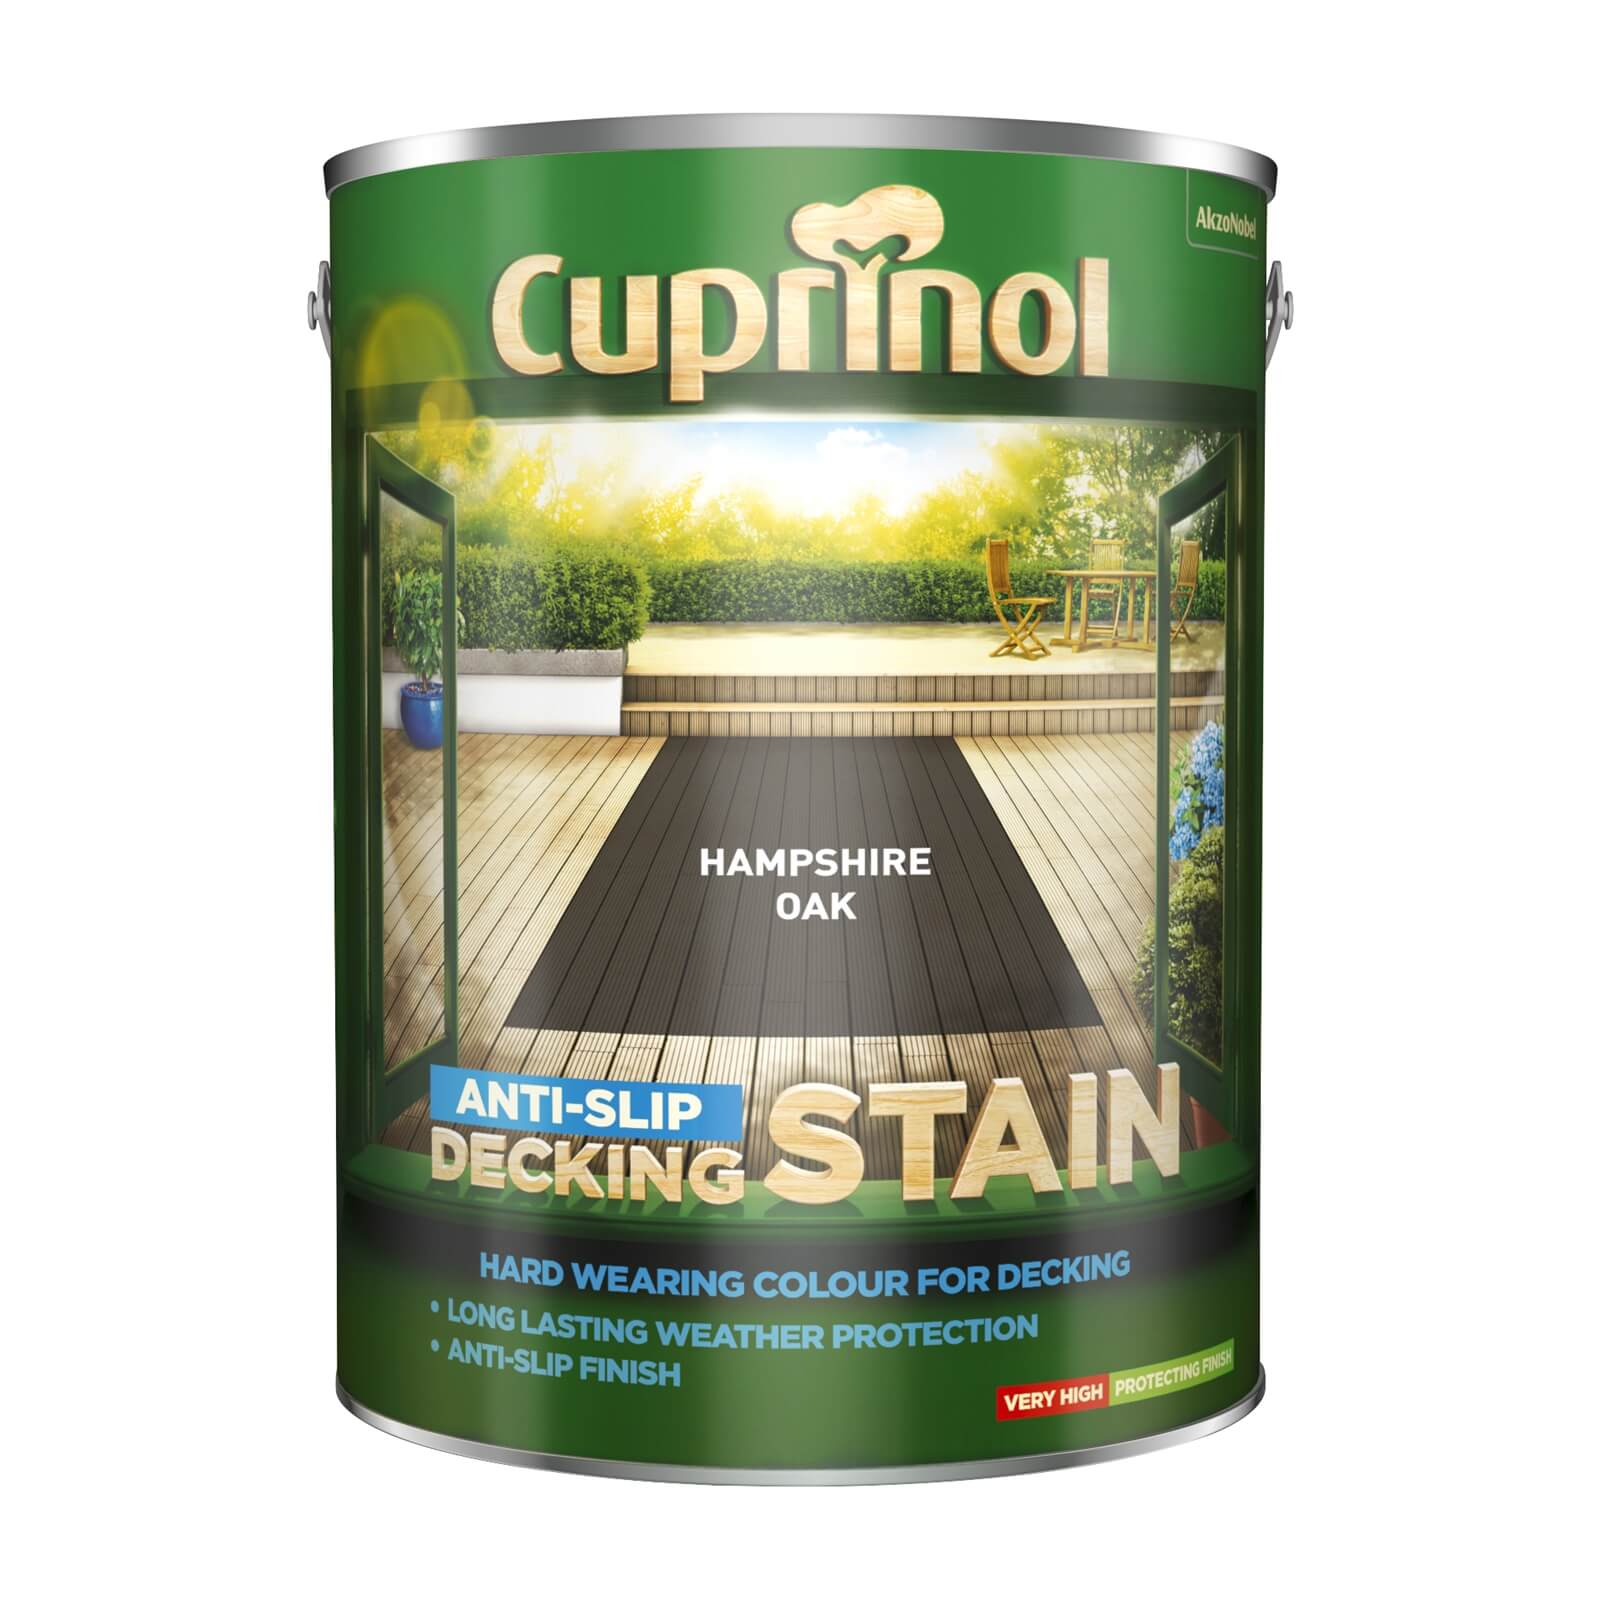 Photo of Cuprinol Anti-slip Decking Stain - Hamps/oak - 5l